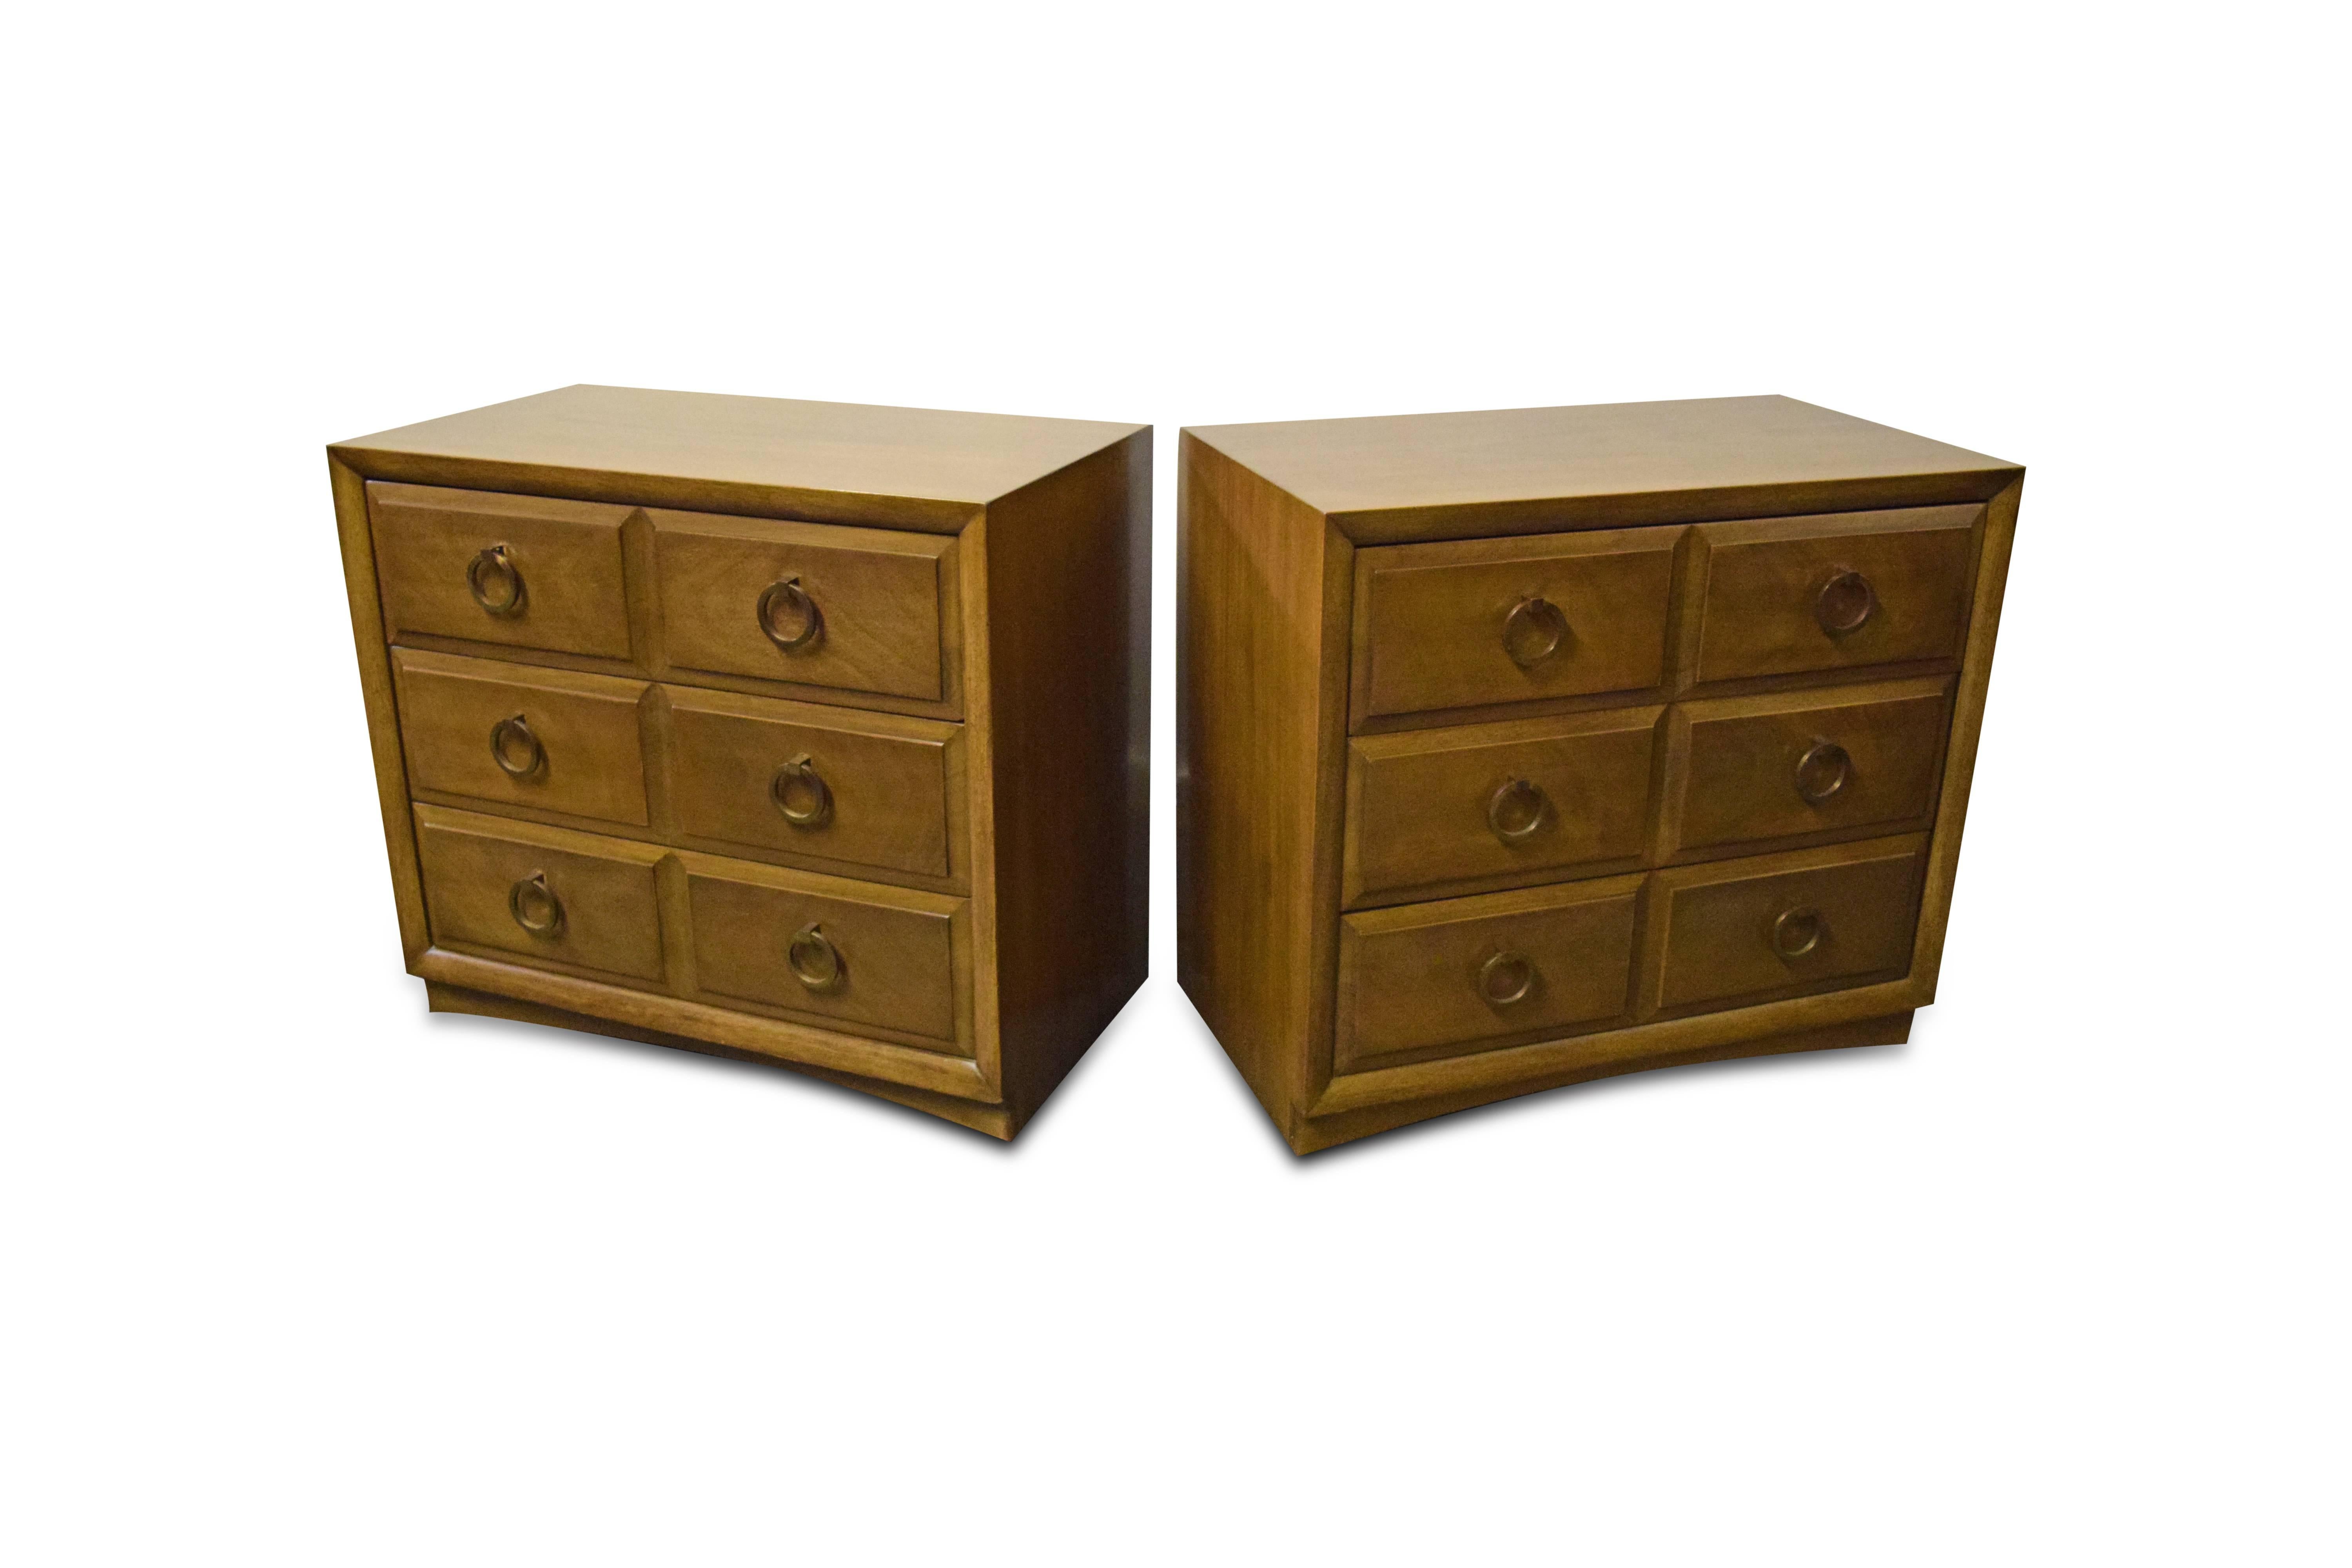 Pair of T.H. Robsjohn-Gibbings for Widdicomb chest of drawers.